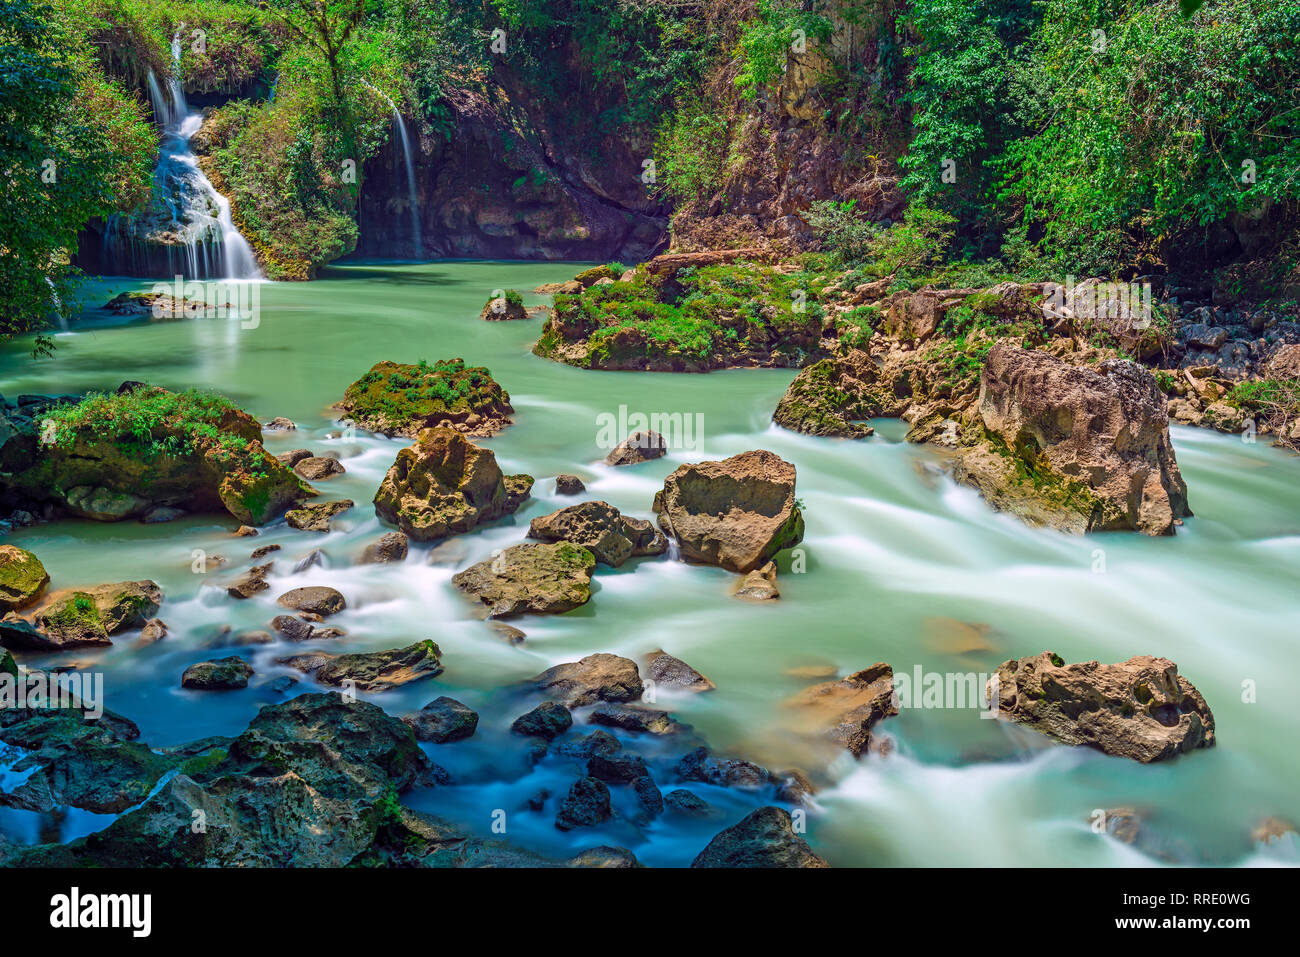 Lange Exposition der Kaskaden und Wasserfällen von Semuc Champey mit türkis farben in der El Peten Regenwald von Guatemala, Mittelamerika. Stockfoto